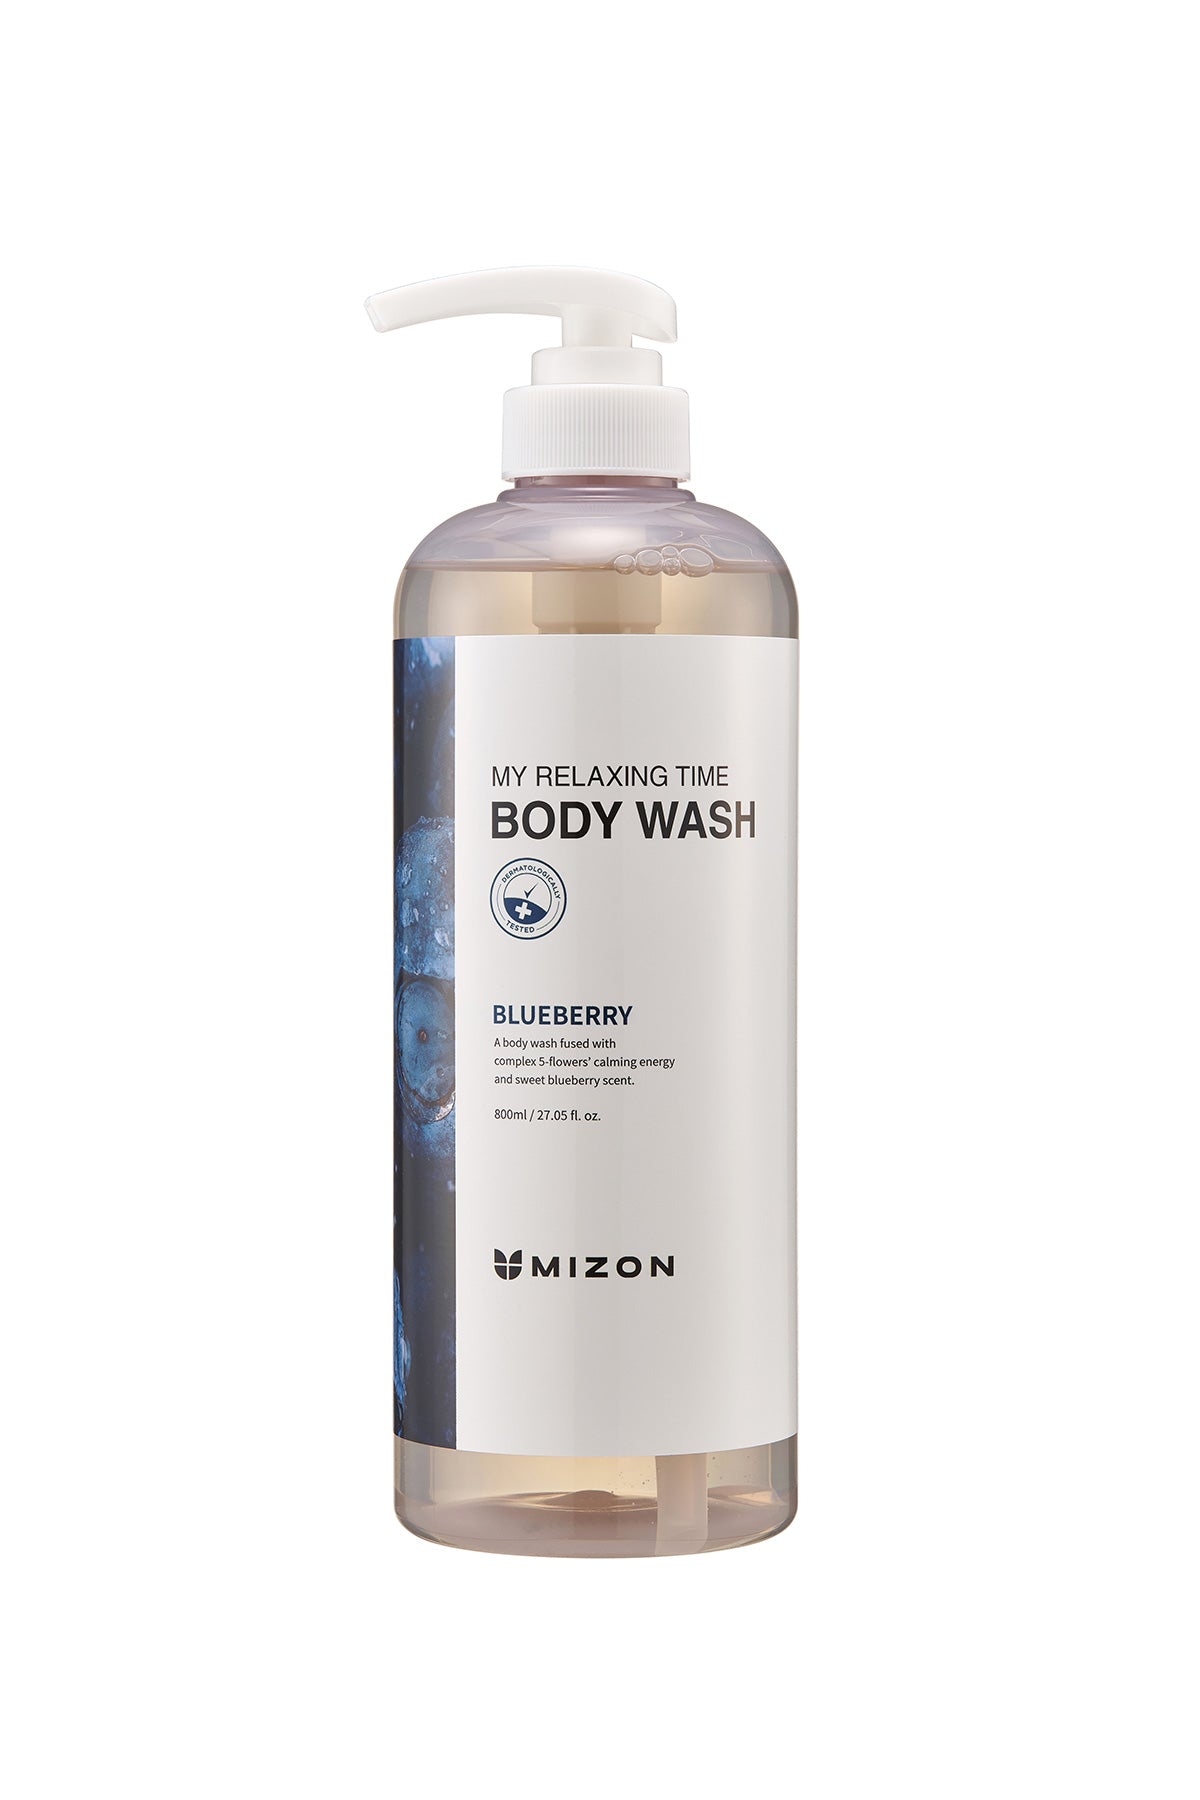 Mizon My Relaxing Time Body Wash Blueberry - Rahatlatıcı Yaban Mersinli Duş Jeli